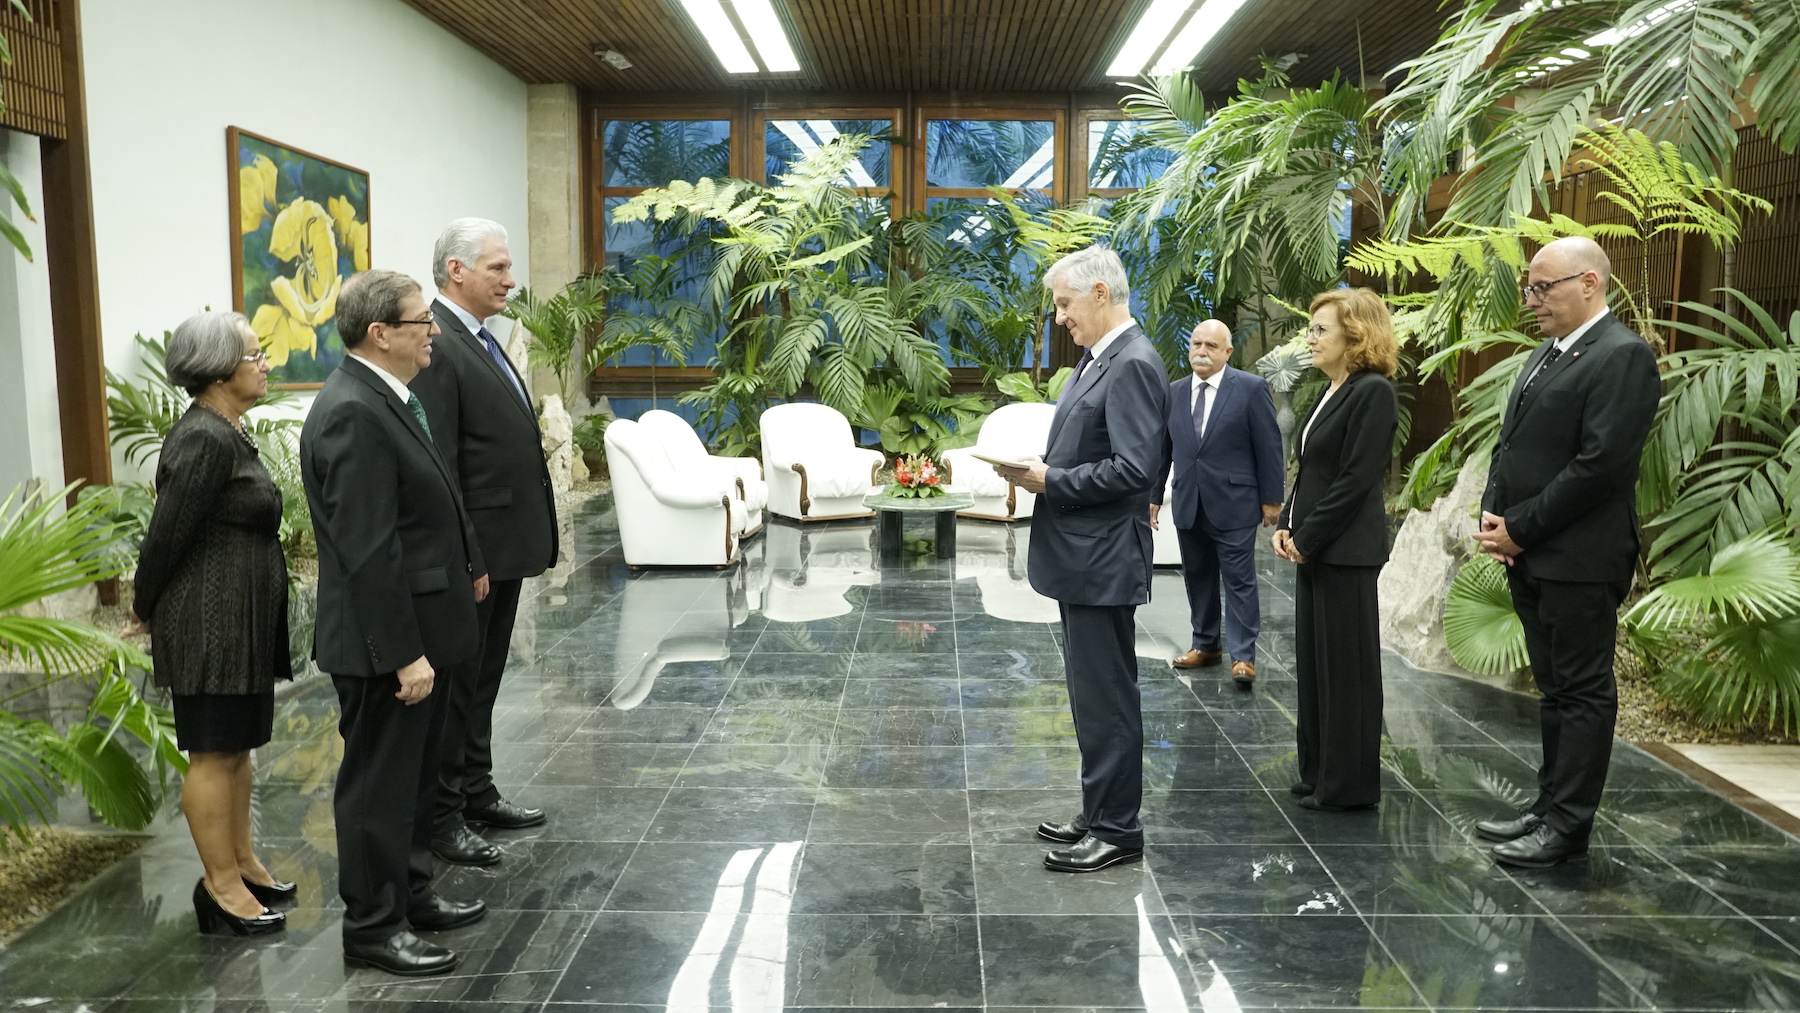 Le nouvel ambassadeur de l’Ordre souverain de Malte auprès de Cuba a présenté ses lettres de créance